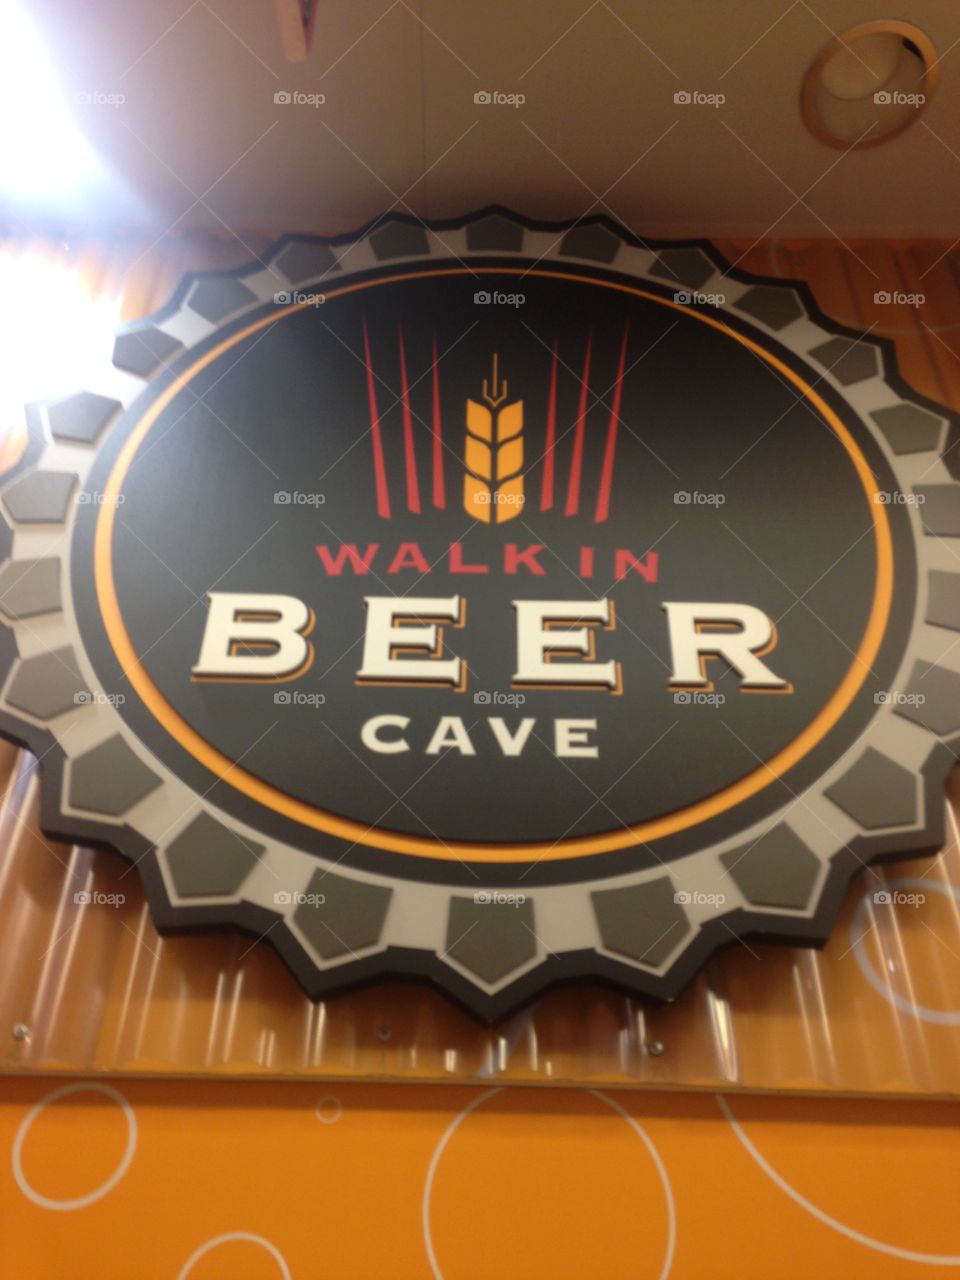 Beer cave